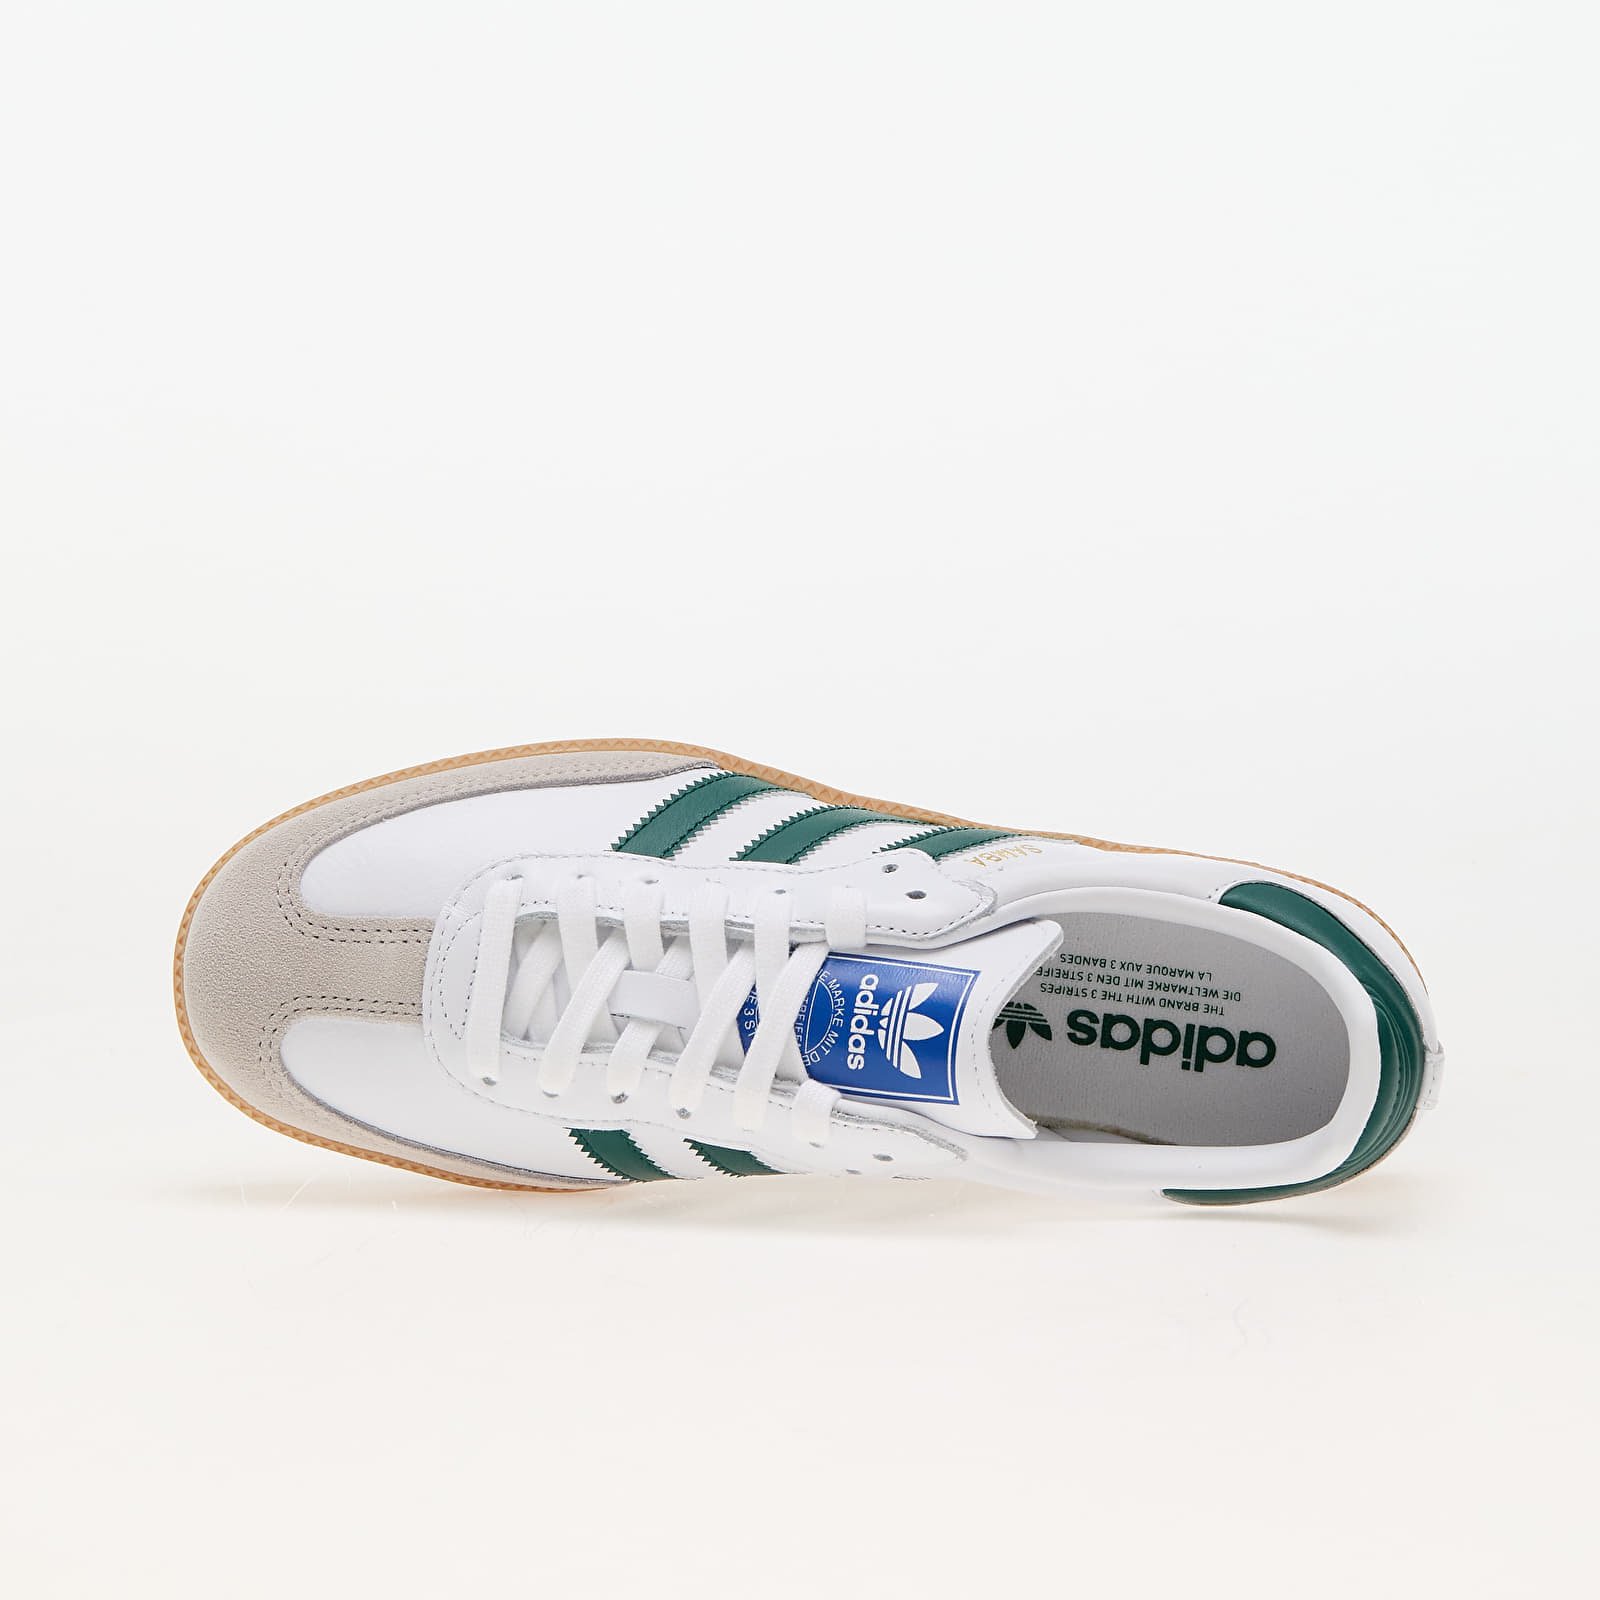 adidas Samba Og Ftw White/ Collegiate Green/ Gum, velikost: 36